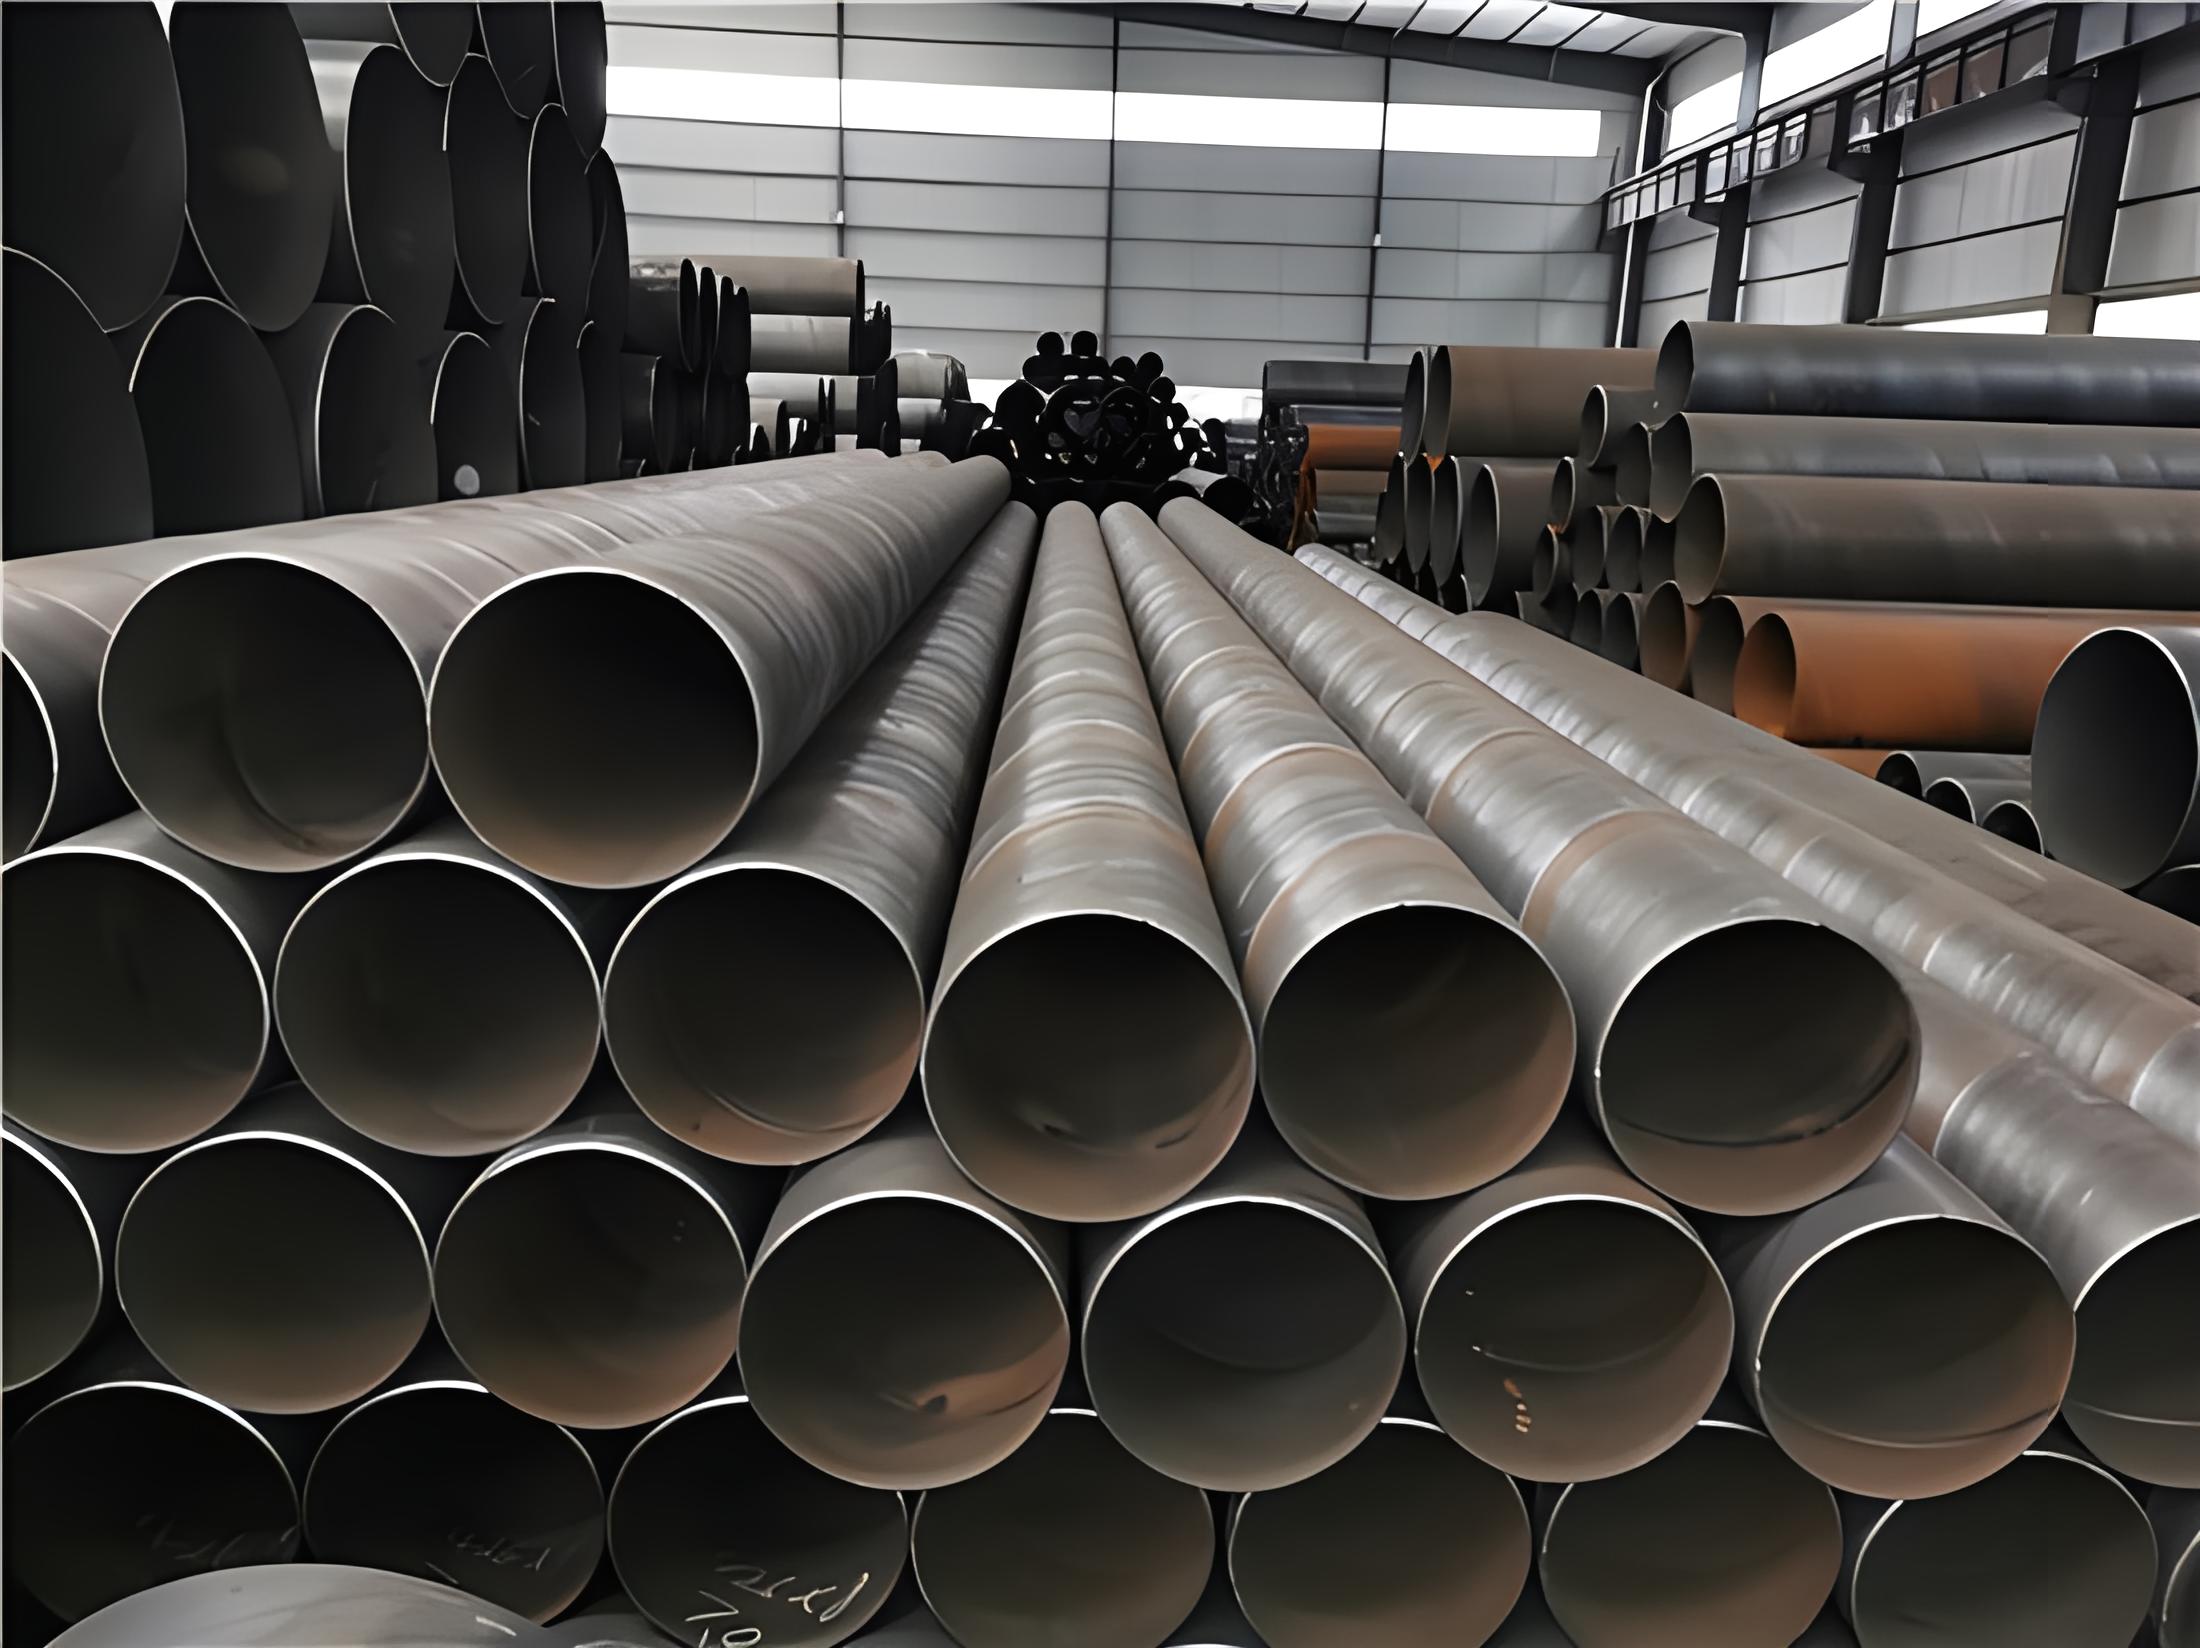 潍坊螺旋钢管现代工业建设的坚实基石